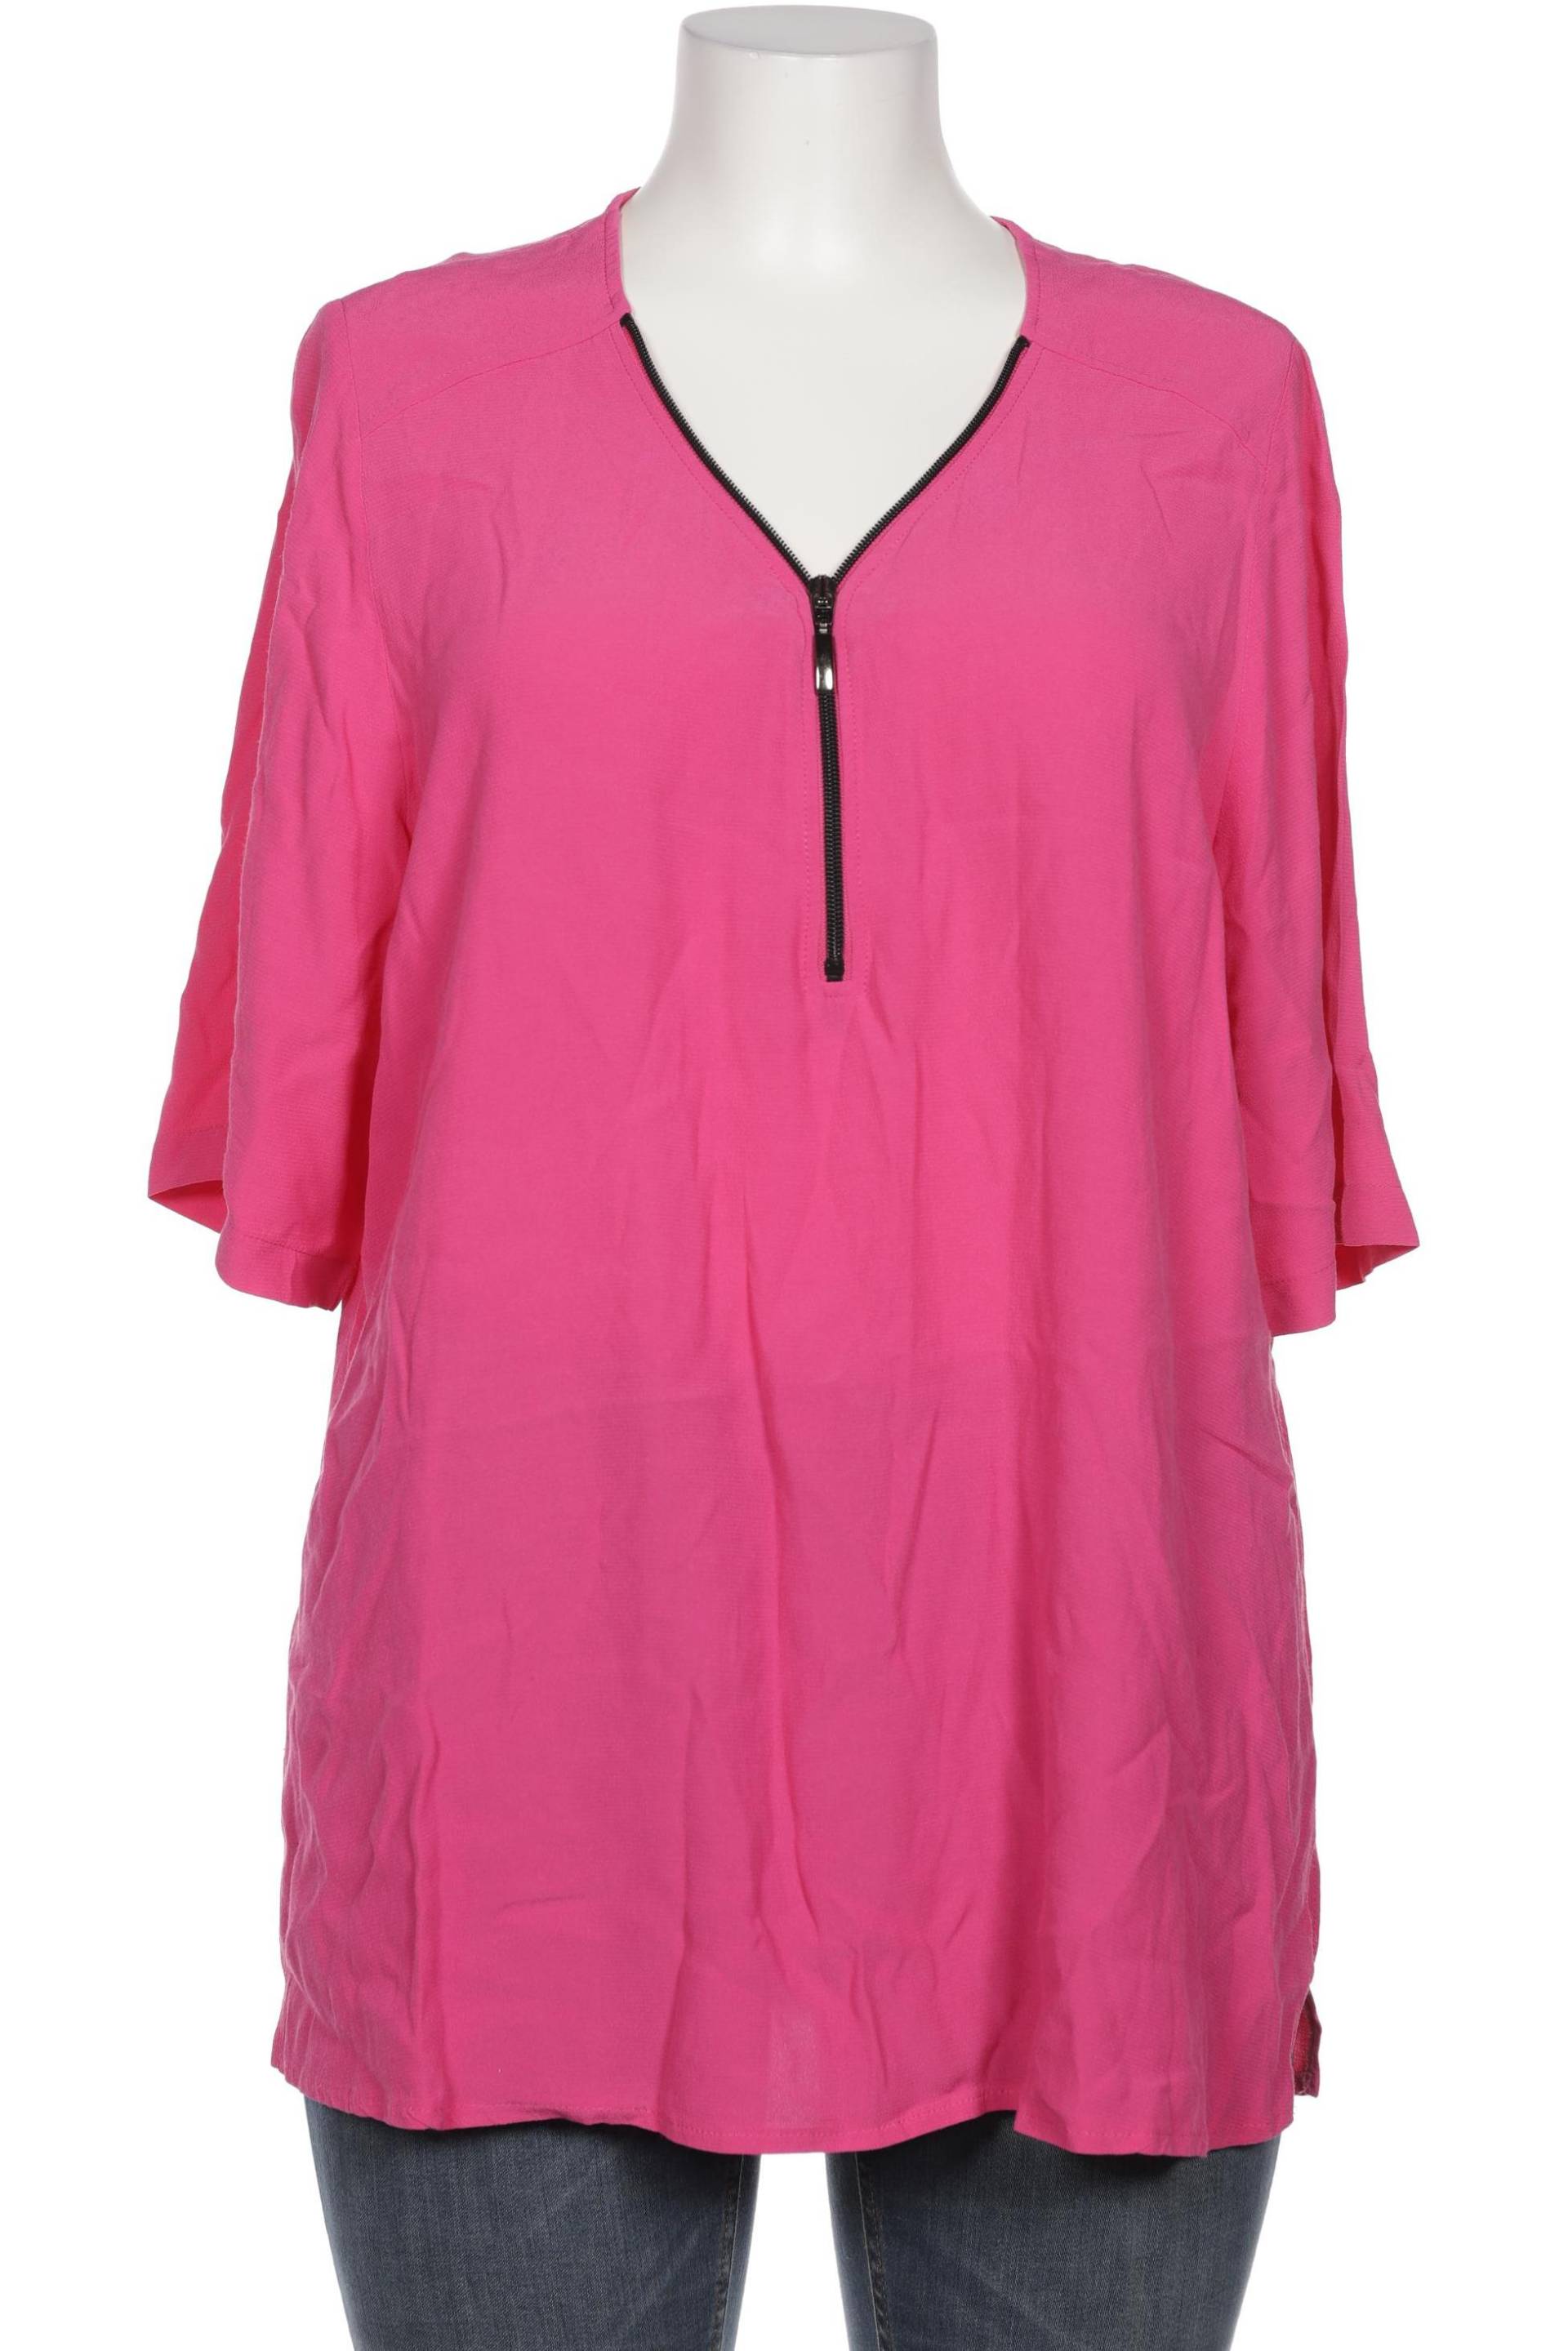 Chalou Damen Bluse, pink, Gr. 46 von Chalou